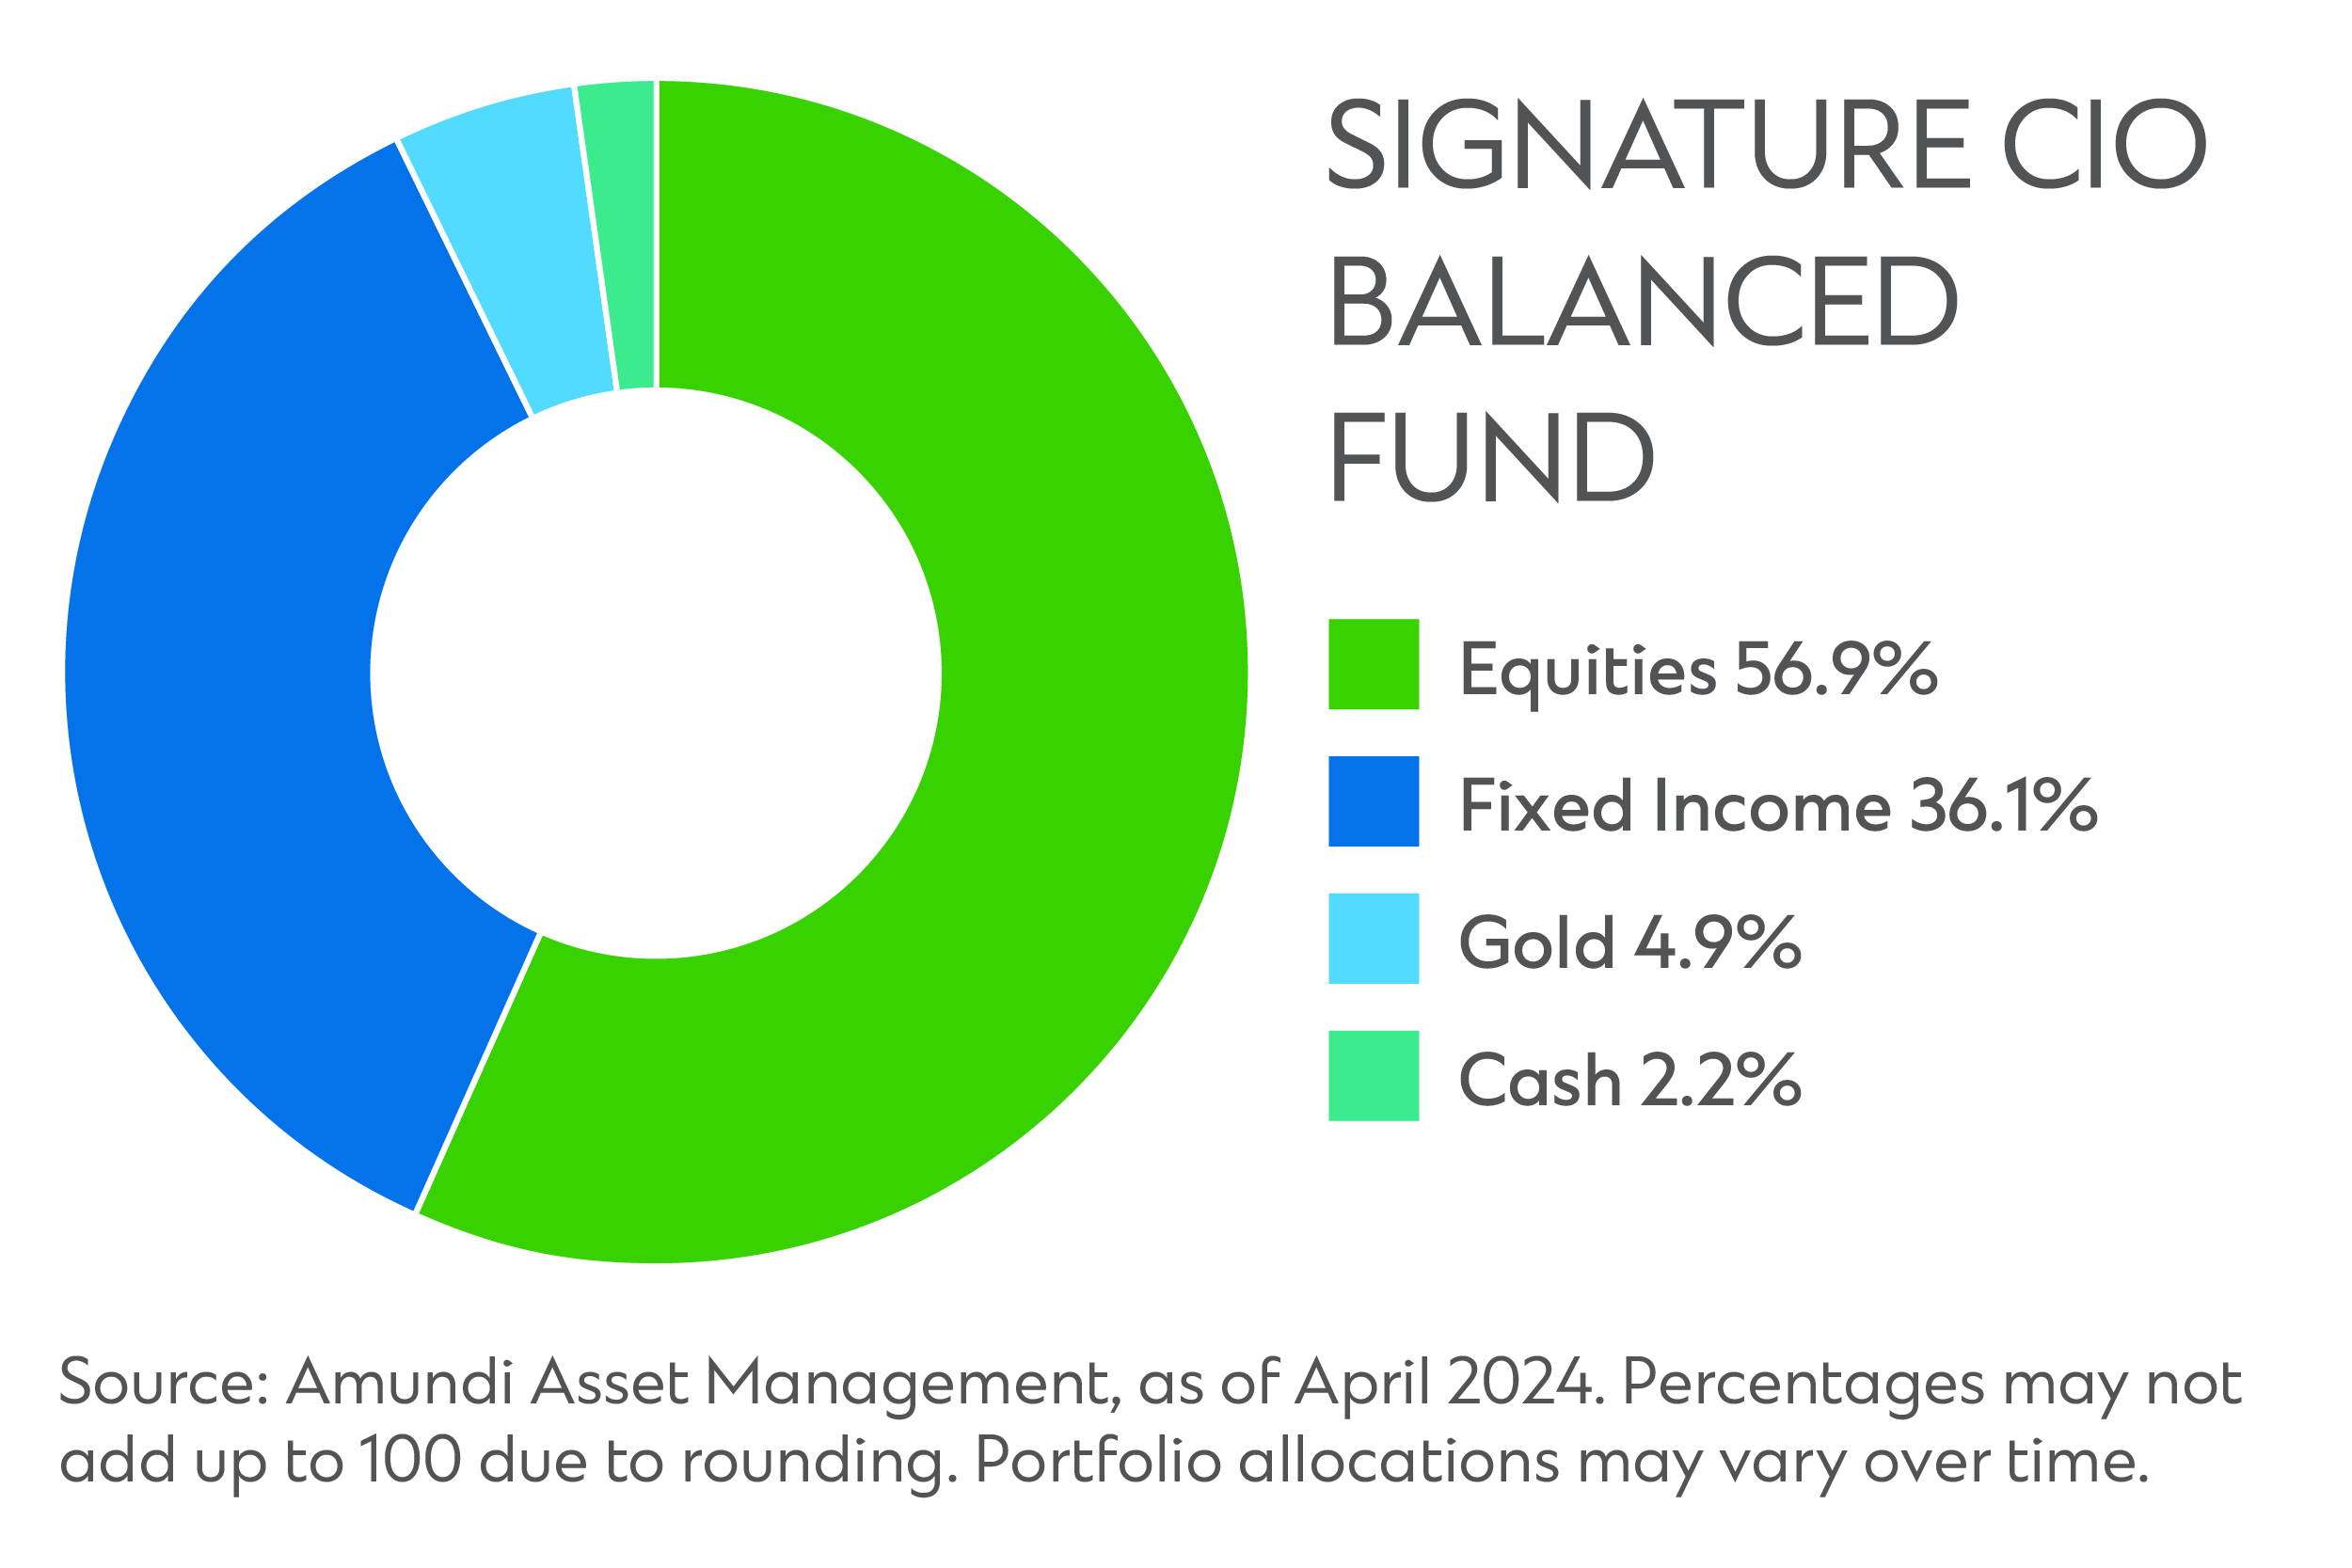 Sg signature cio balanced fund new